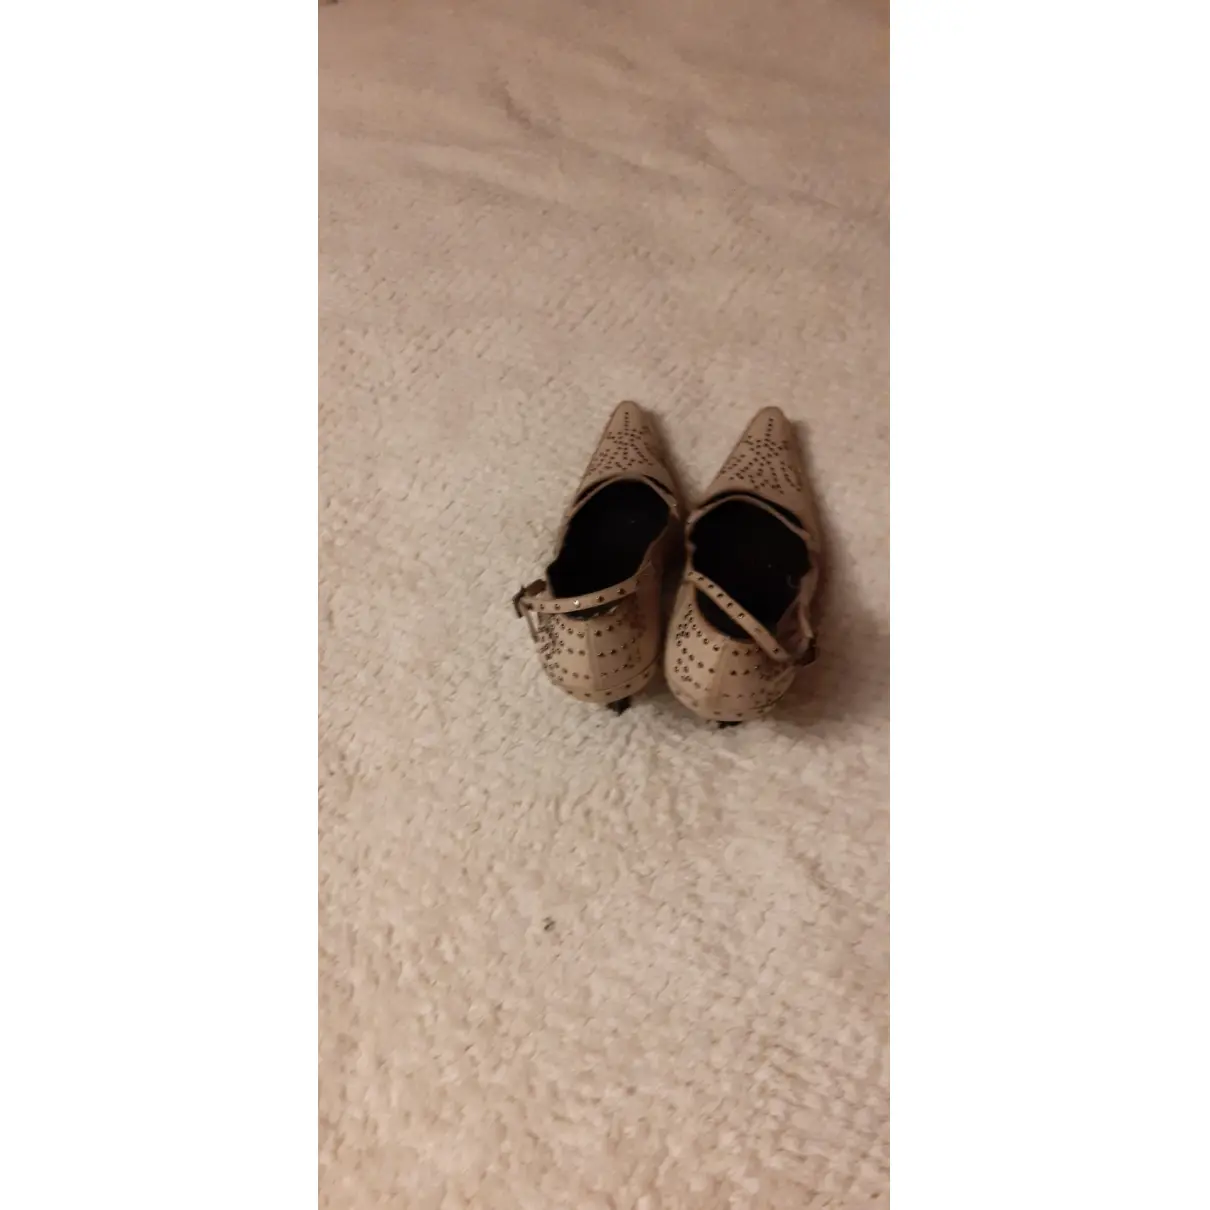 Leather heels Fendi - Vintage